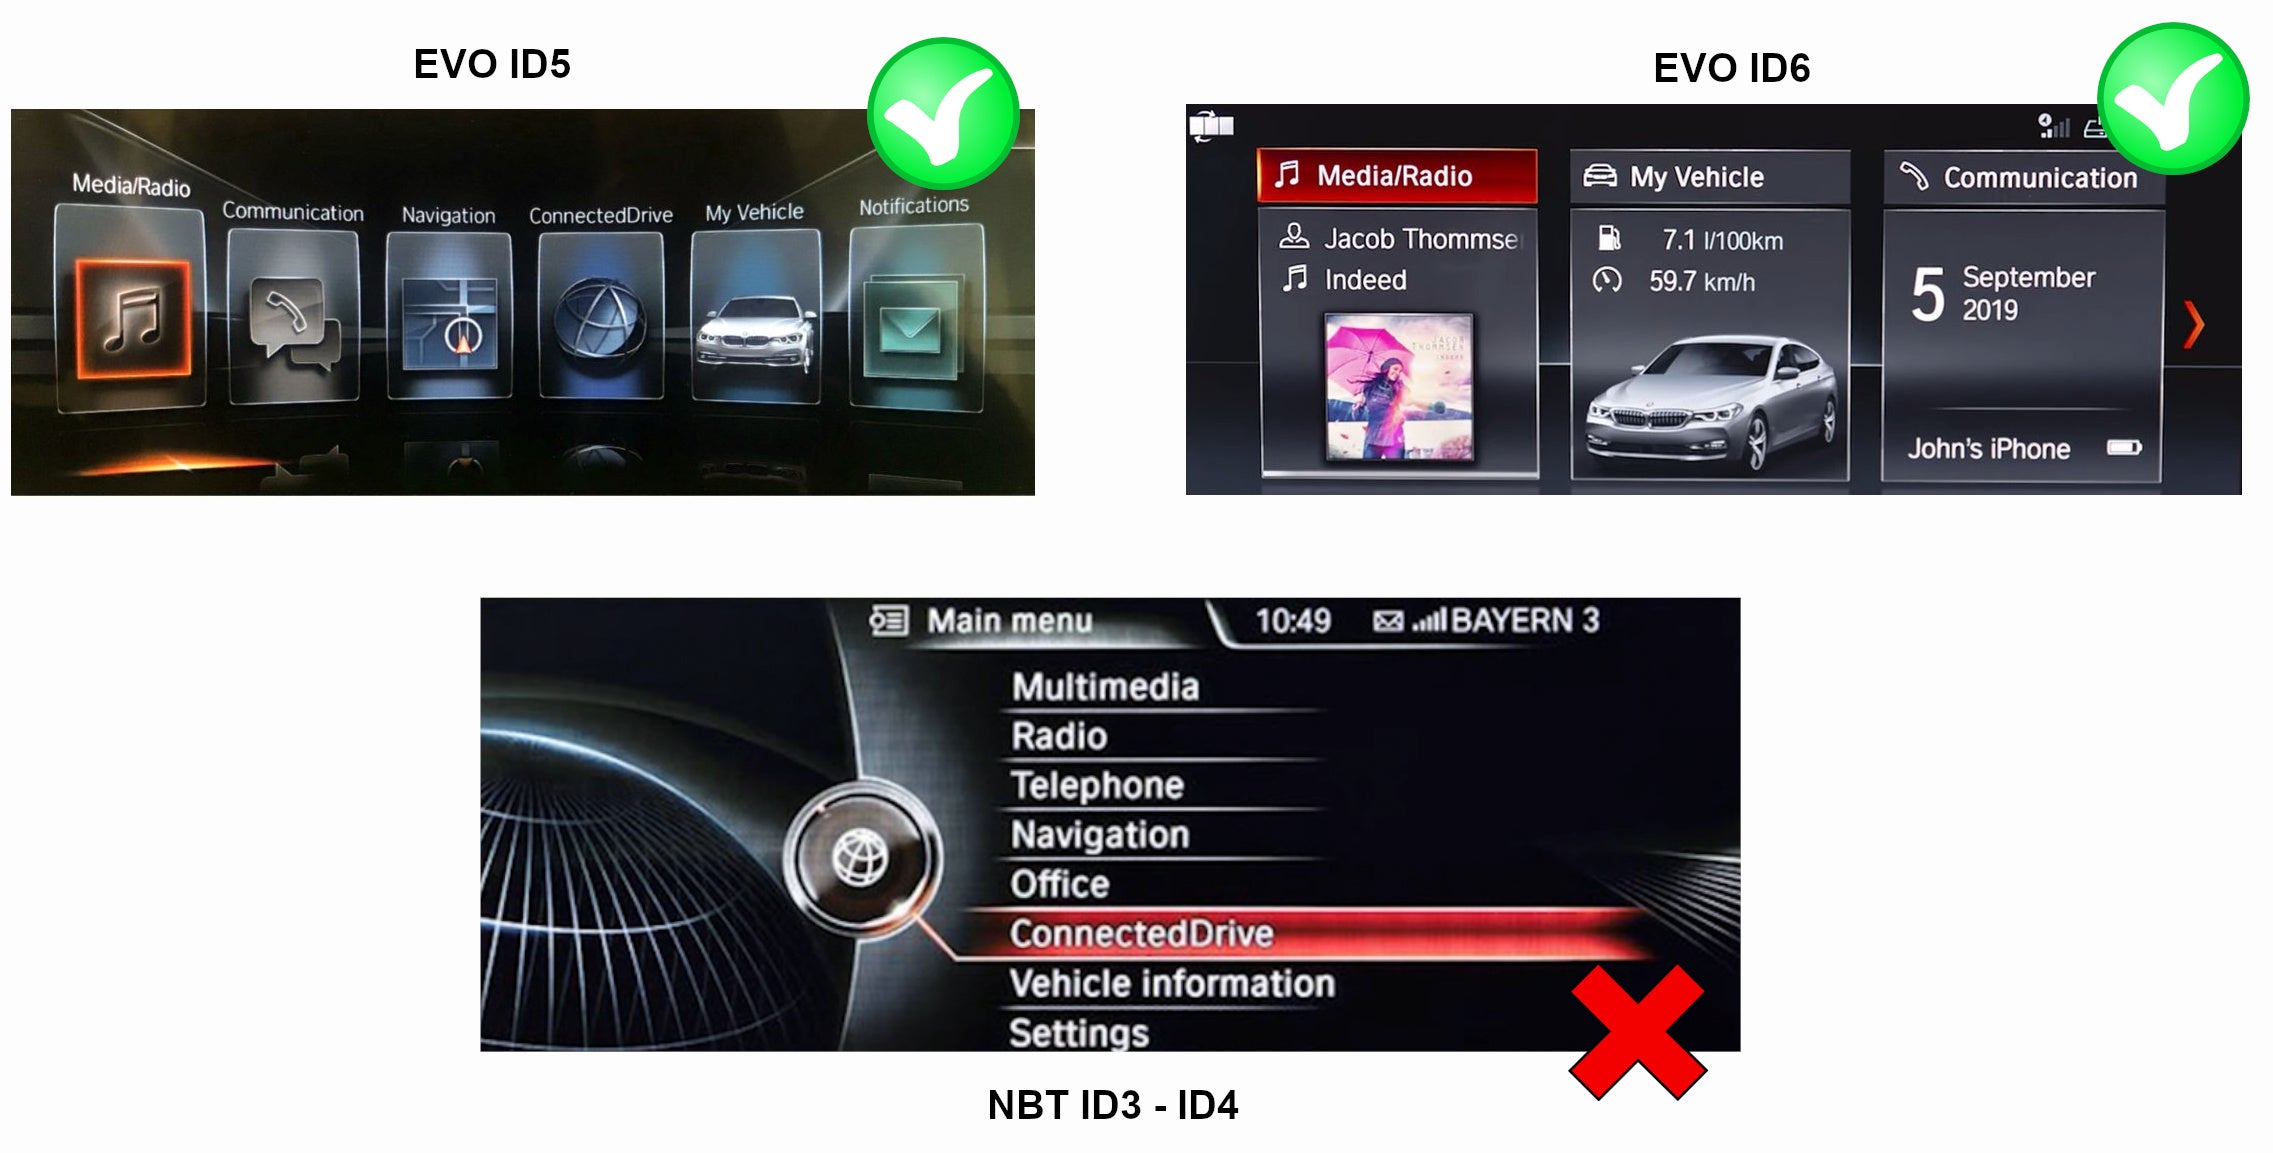 Apple Carplay sans fil et Android Auto sur BMW X4 F26 écran d